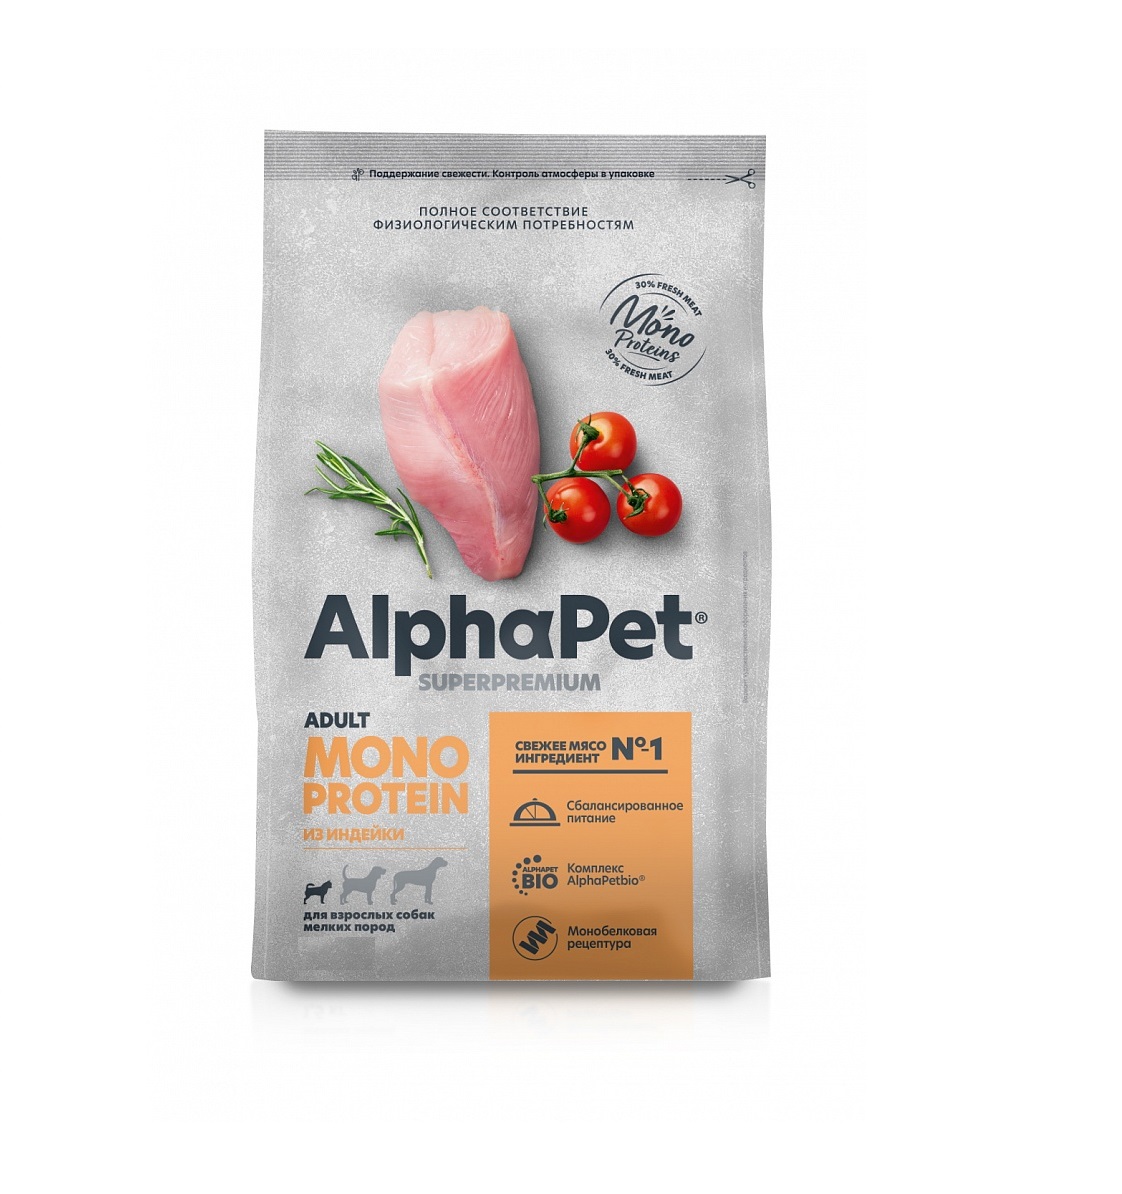 АльфаПет Монопротеин 500гр - для Мелких Собак, Индейка (Alpha Pet Monoprotein) + Подарок